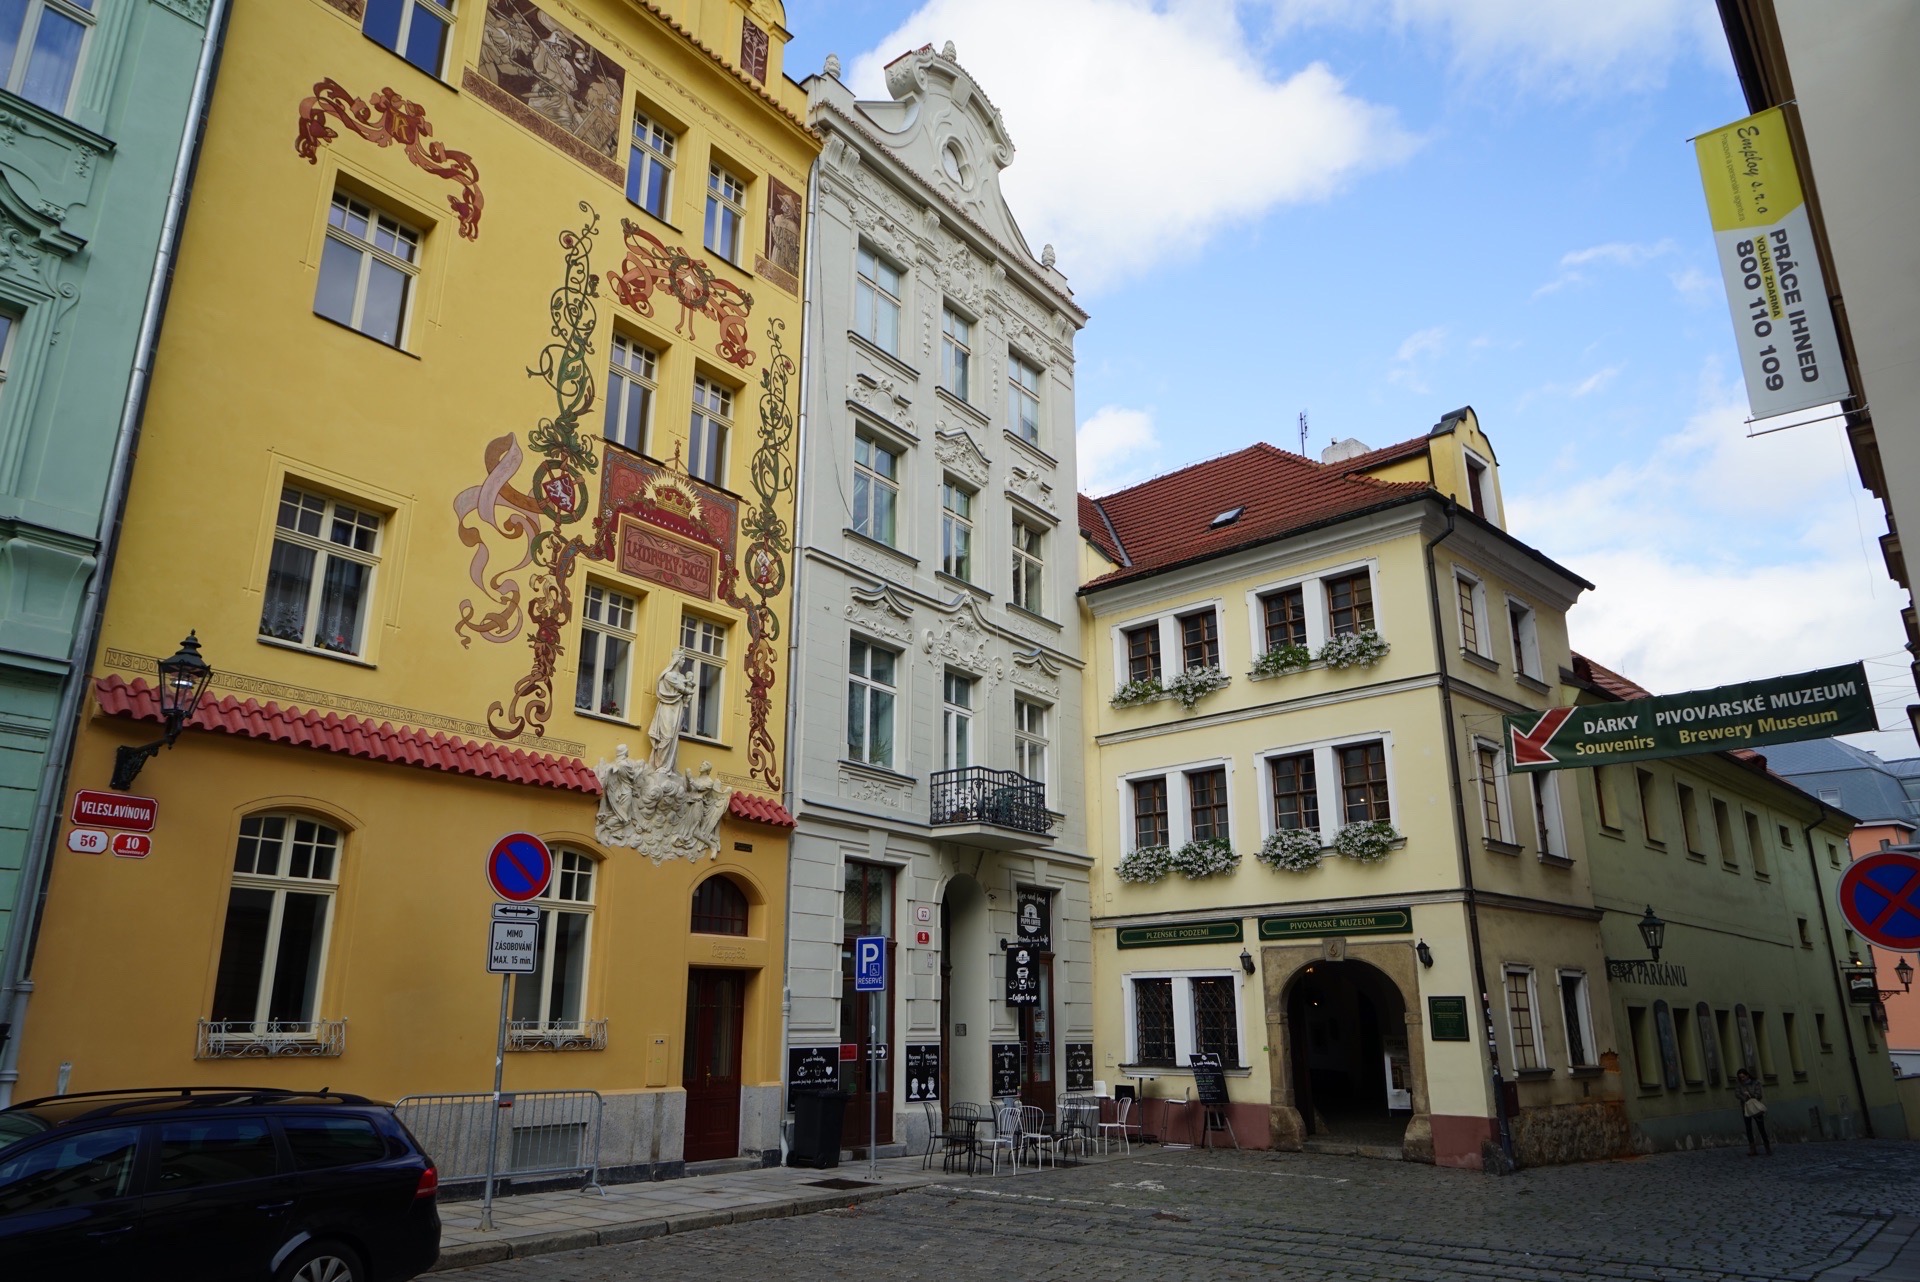 比尔森市Plzen，是西捷克州首府，重要经济、文化中心，以汽车工业及啤酒制造业闻名，捷克3大名酒之一